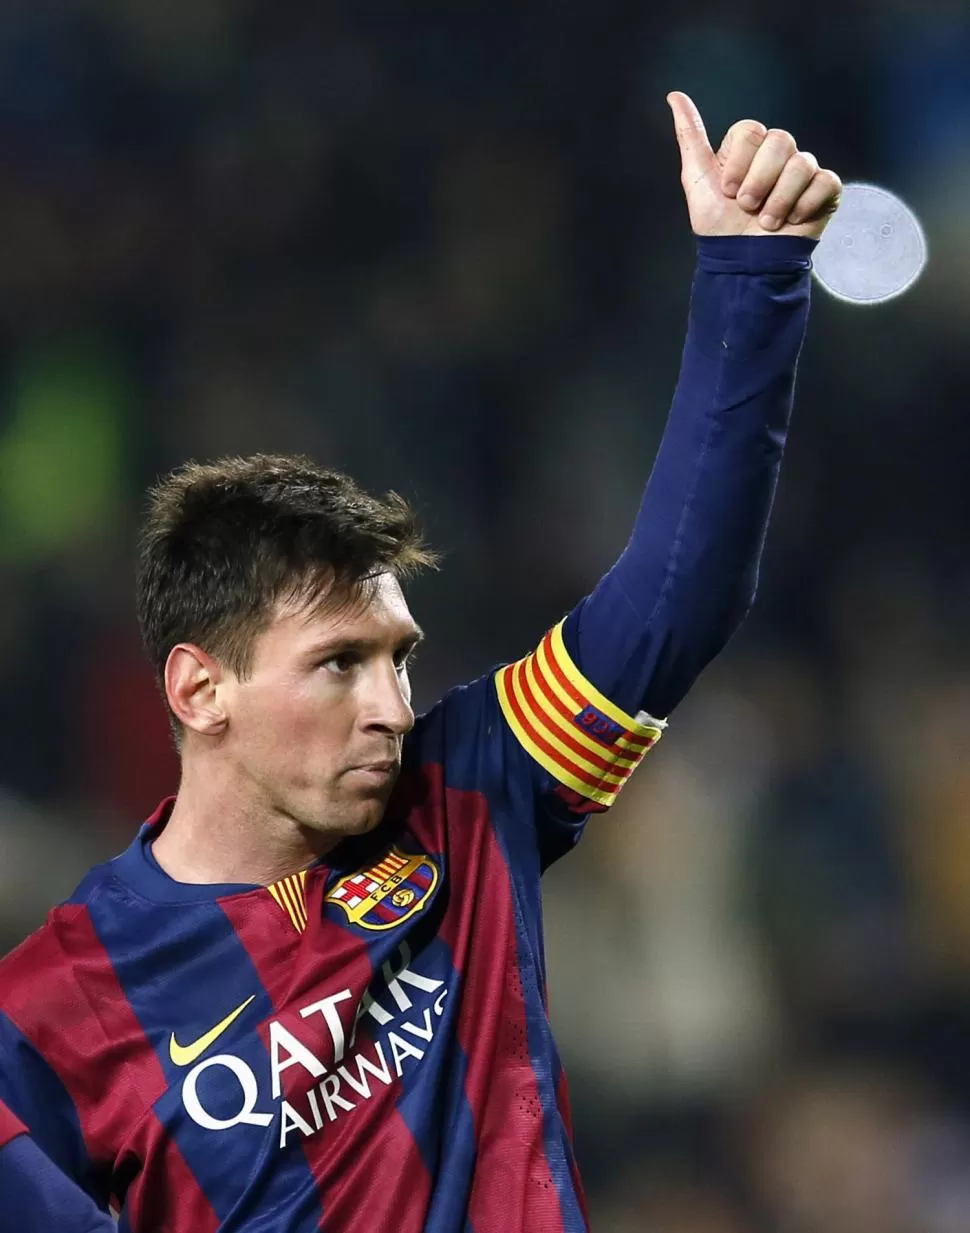 NO SE CANSA DE CELEBRAR. Messi es una máquina de marcar goles desde que empezó el año. El sábado hizo otros dos. reuters (archivo)